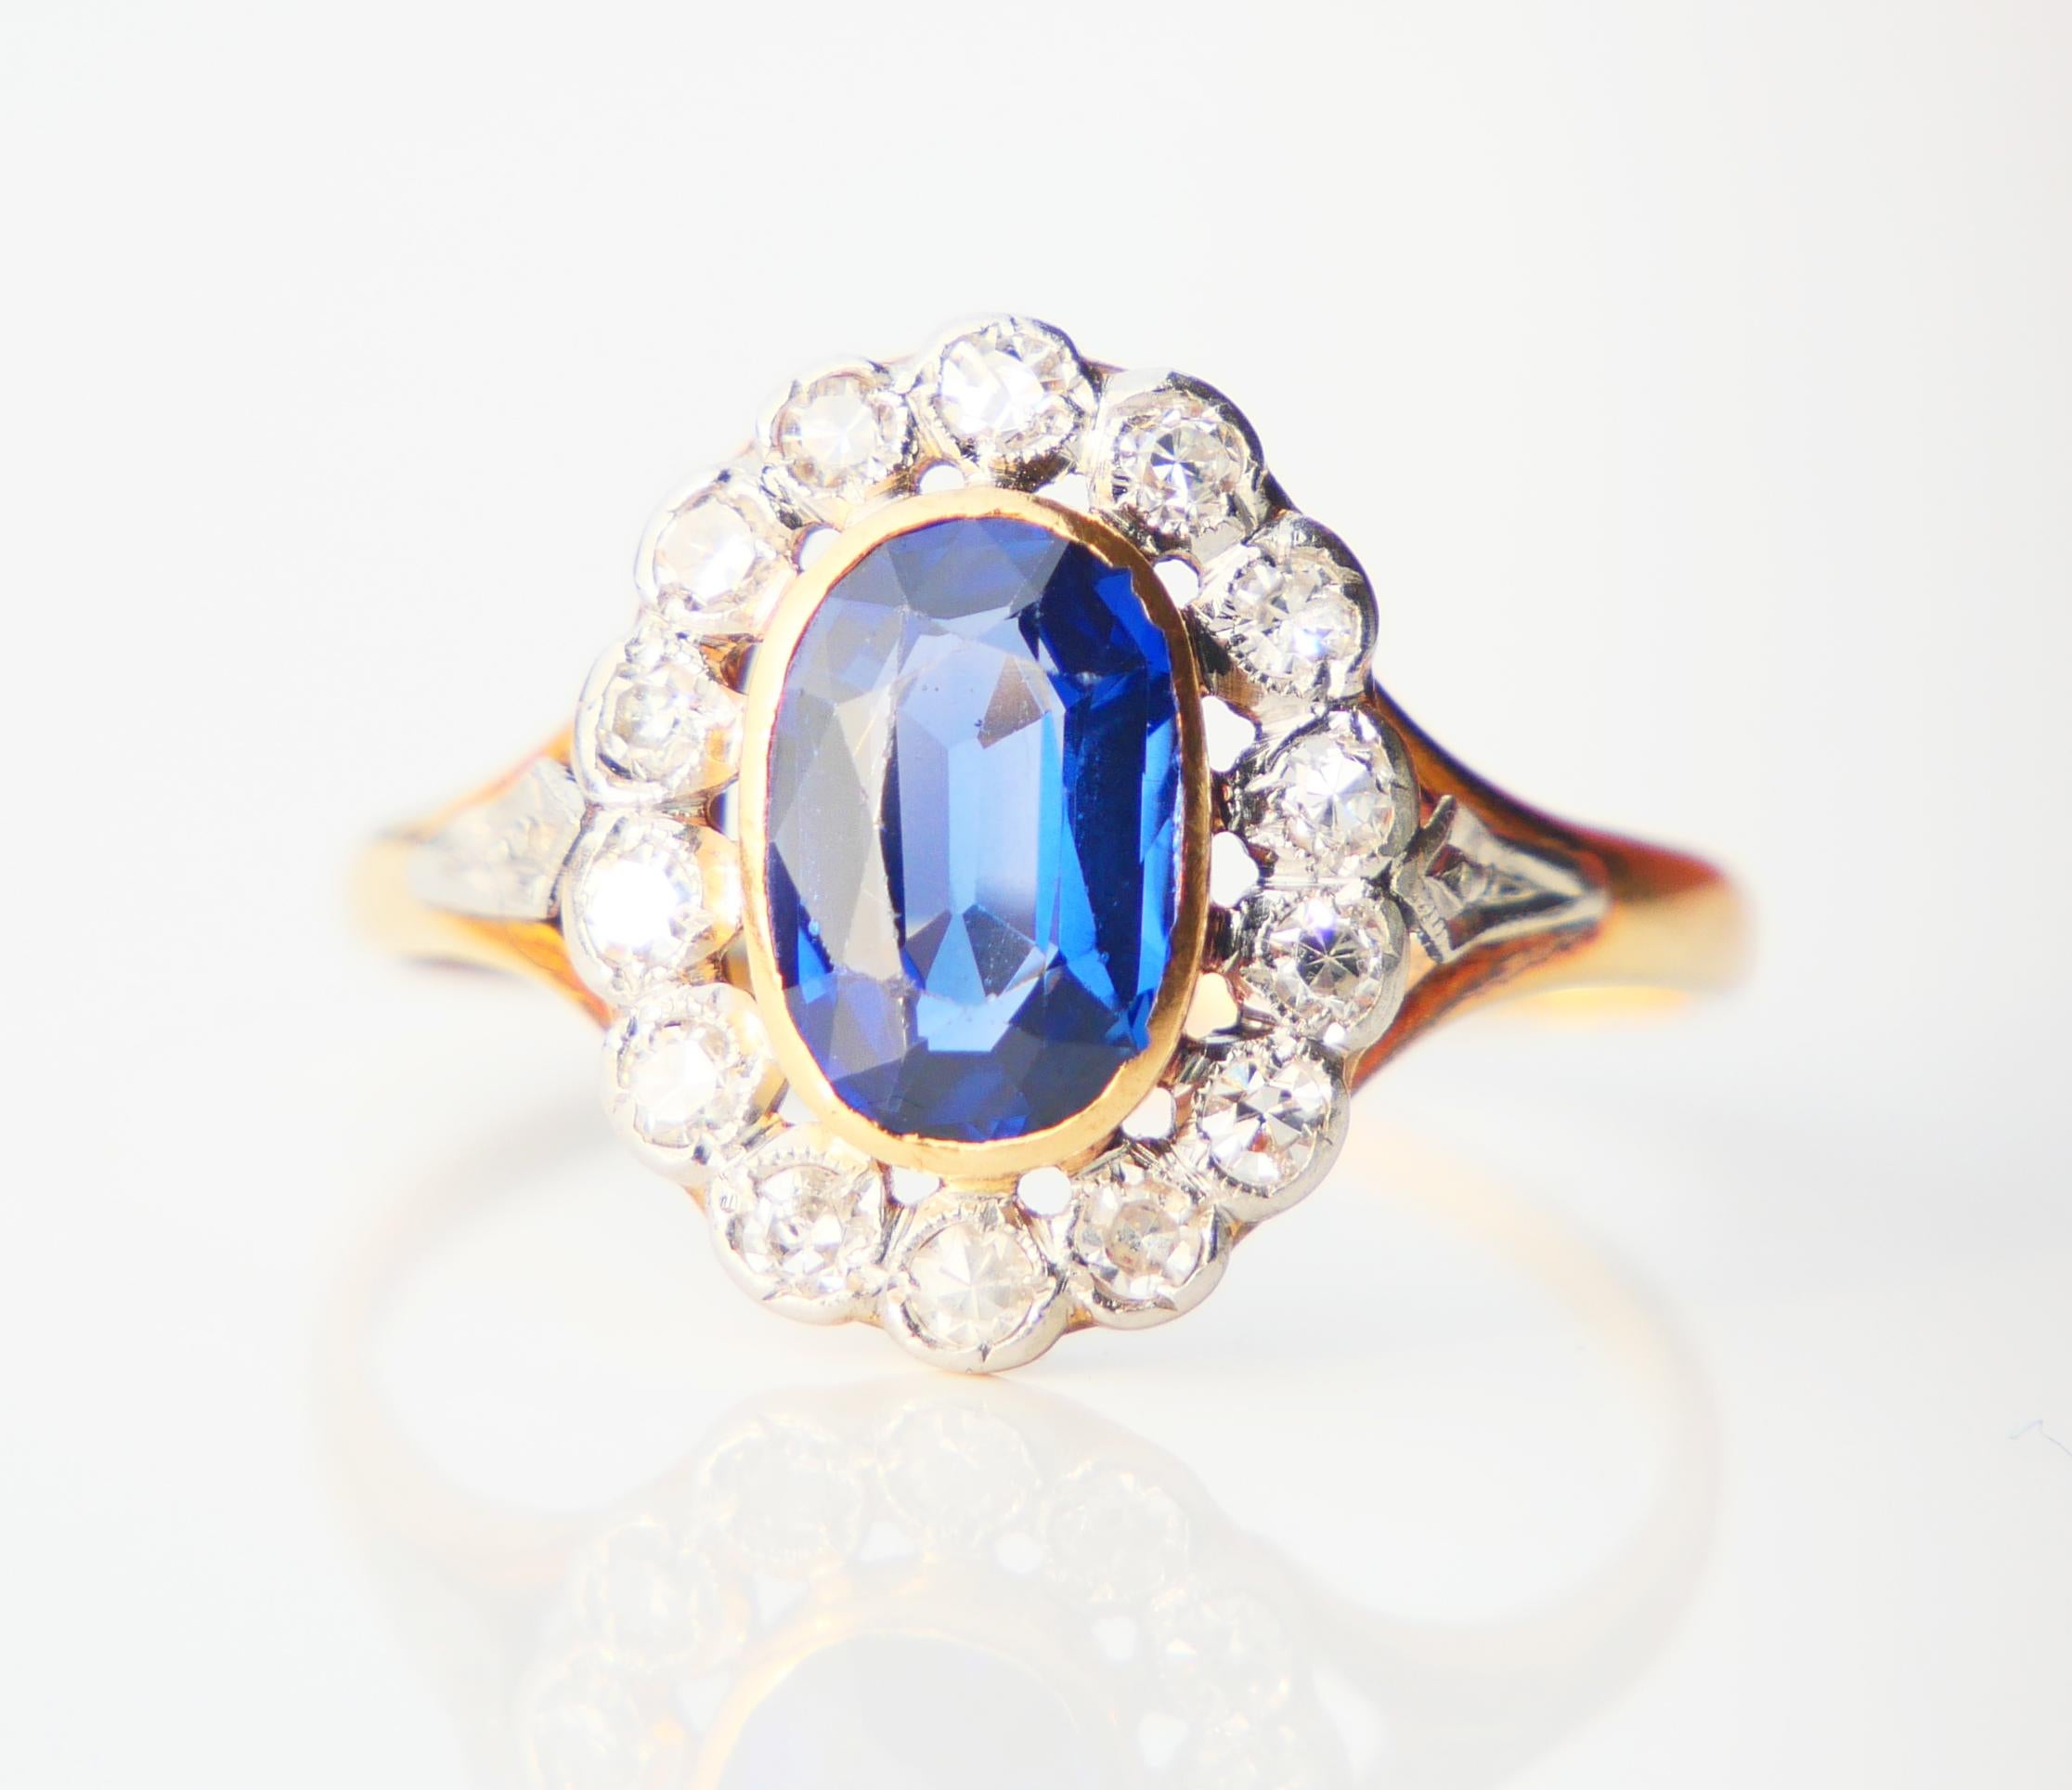 Schöner Halo-Ring aus den 1920er-1930er Jahren aus massivem 18-karätigem Gelbgold mit blauen Saphiren aus dem Labor und 14 natürlichen Diamanten in Platinfassung.

Saphir von ovalem Schnitt, Farbe ist mittel blau, Maßnahmen: 9 mm mm x 6 mm / ca.